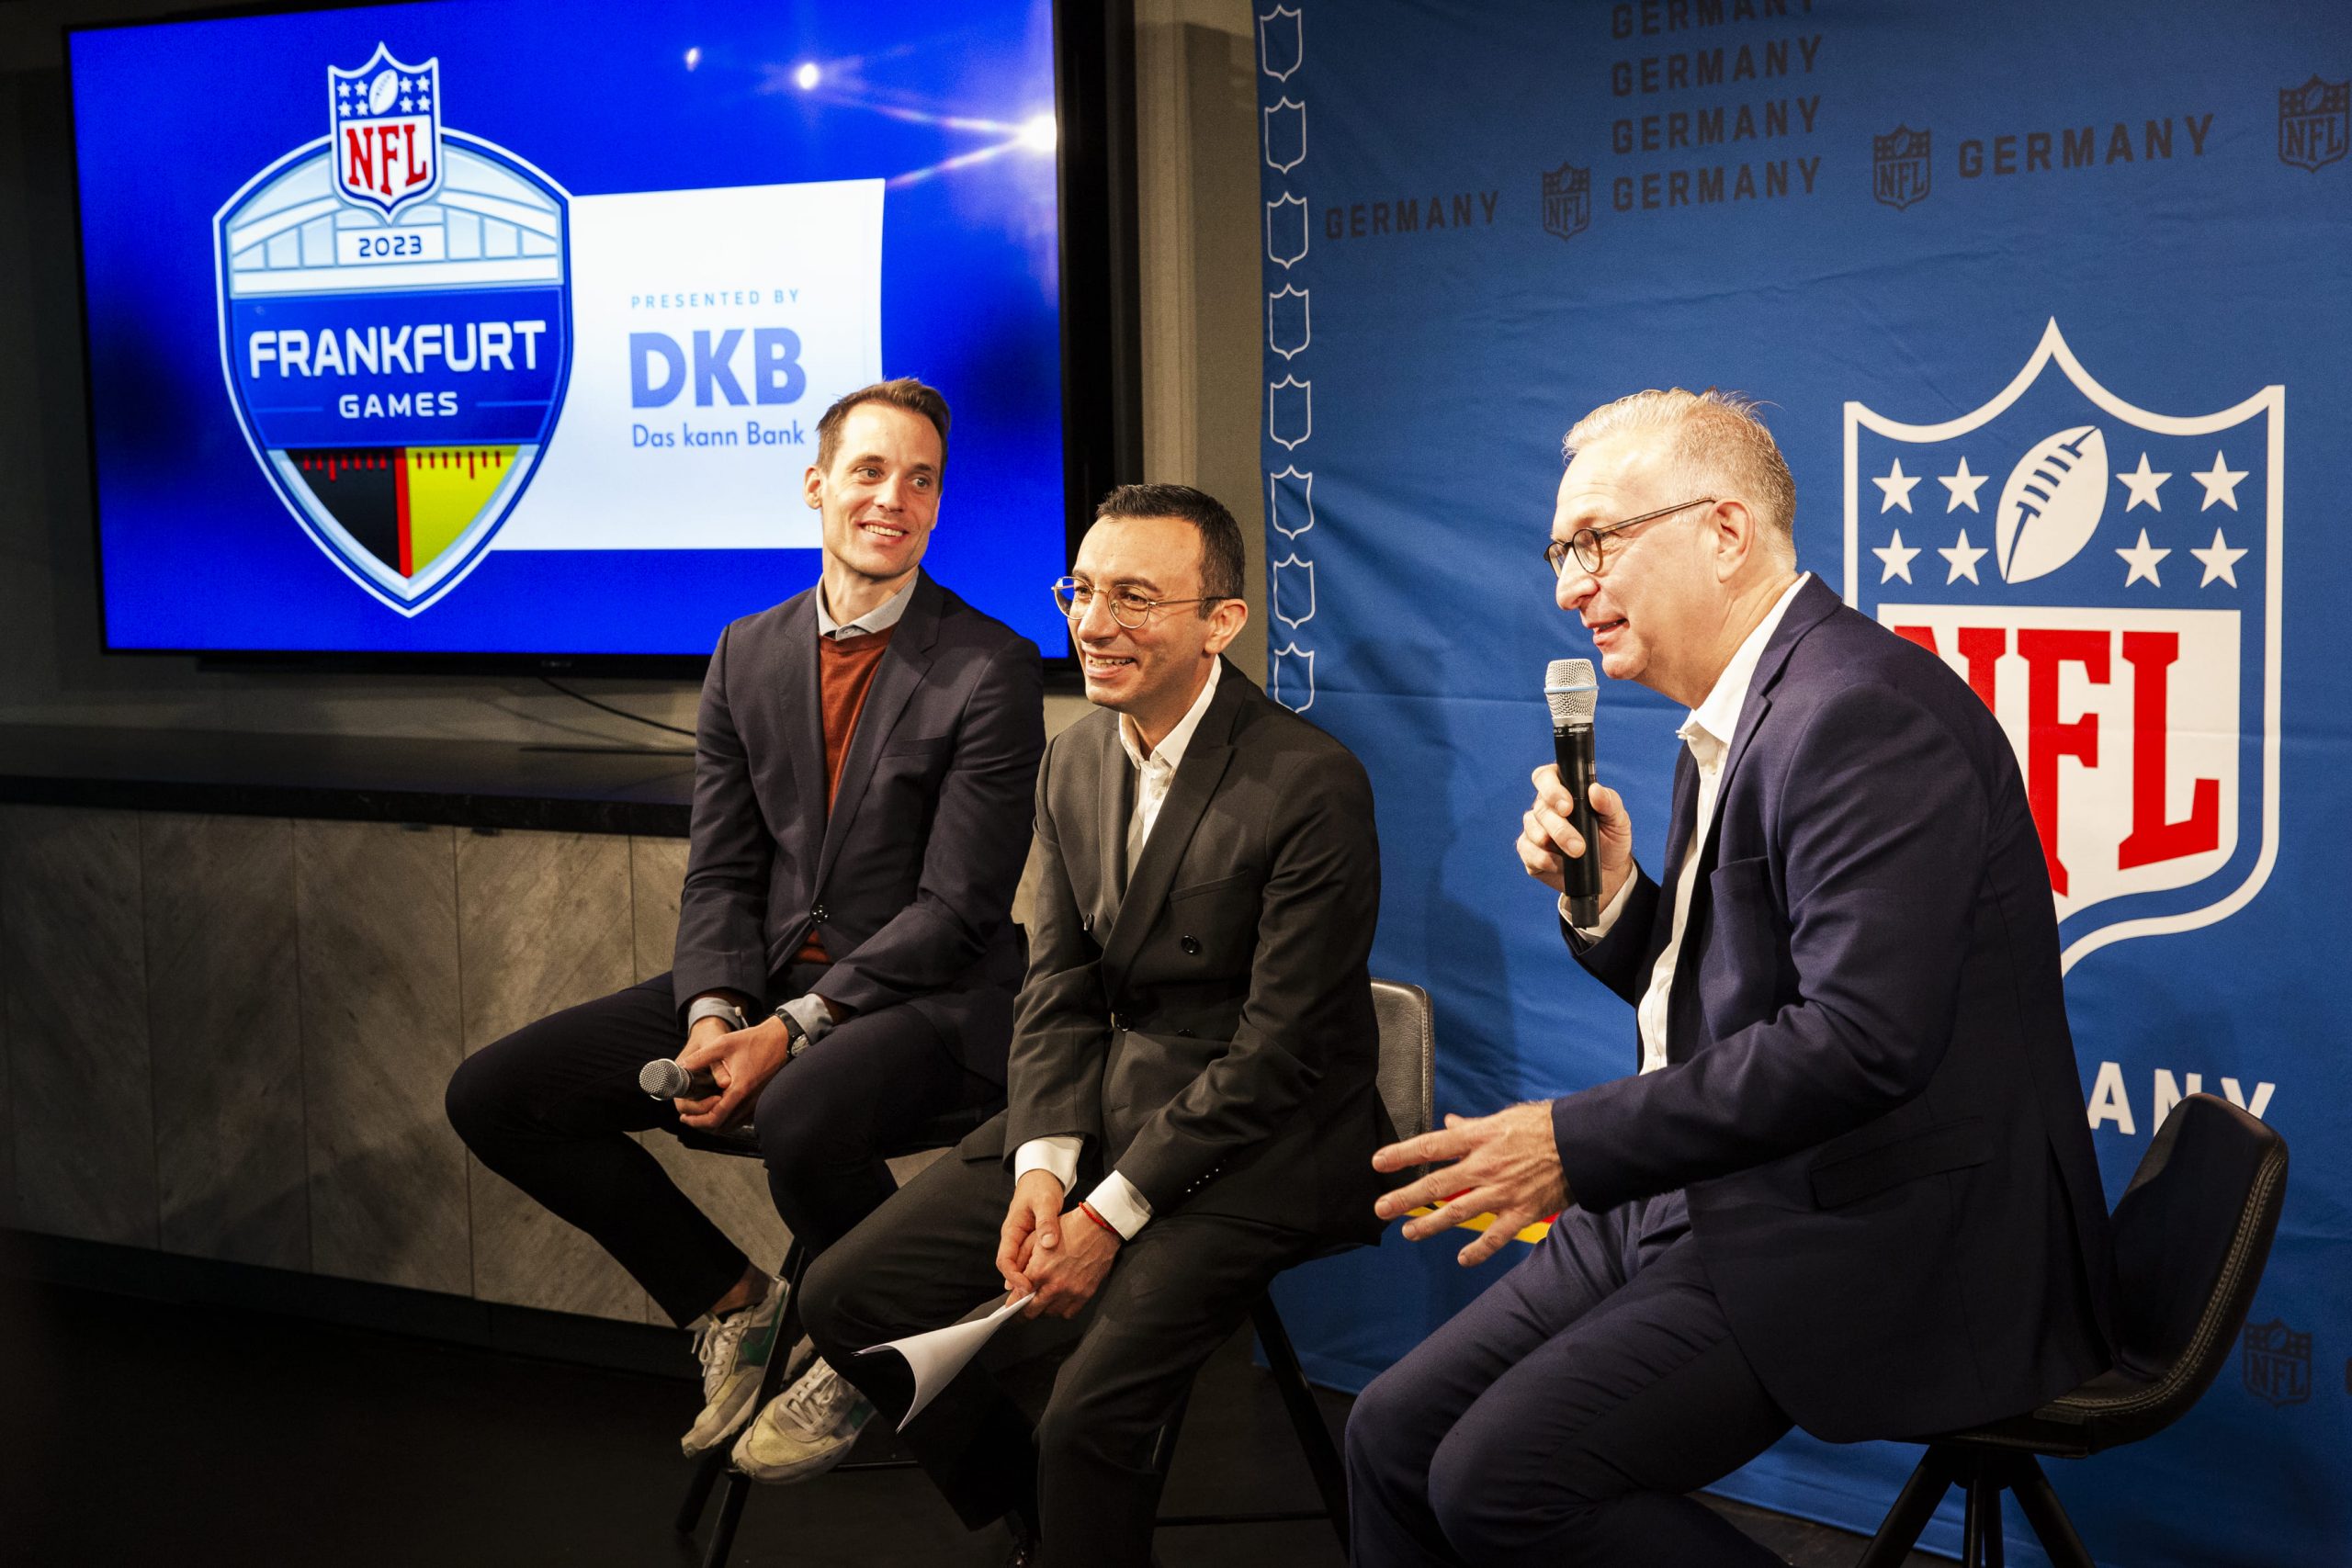 FootballR - NFL - Drei Männer in Anzügen sitzen auf einer Bühne bei einem NFL-Event in Frankfurt, Deutschland.